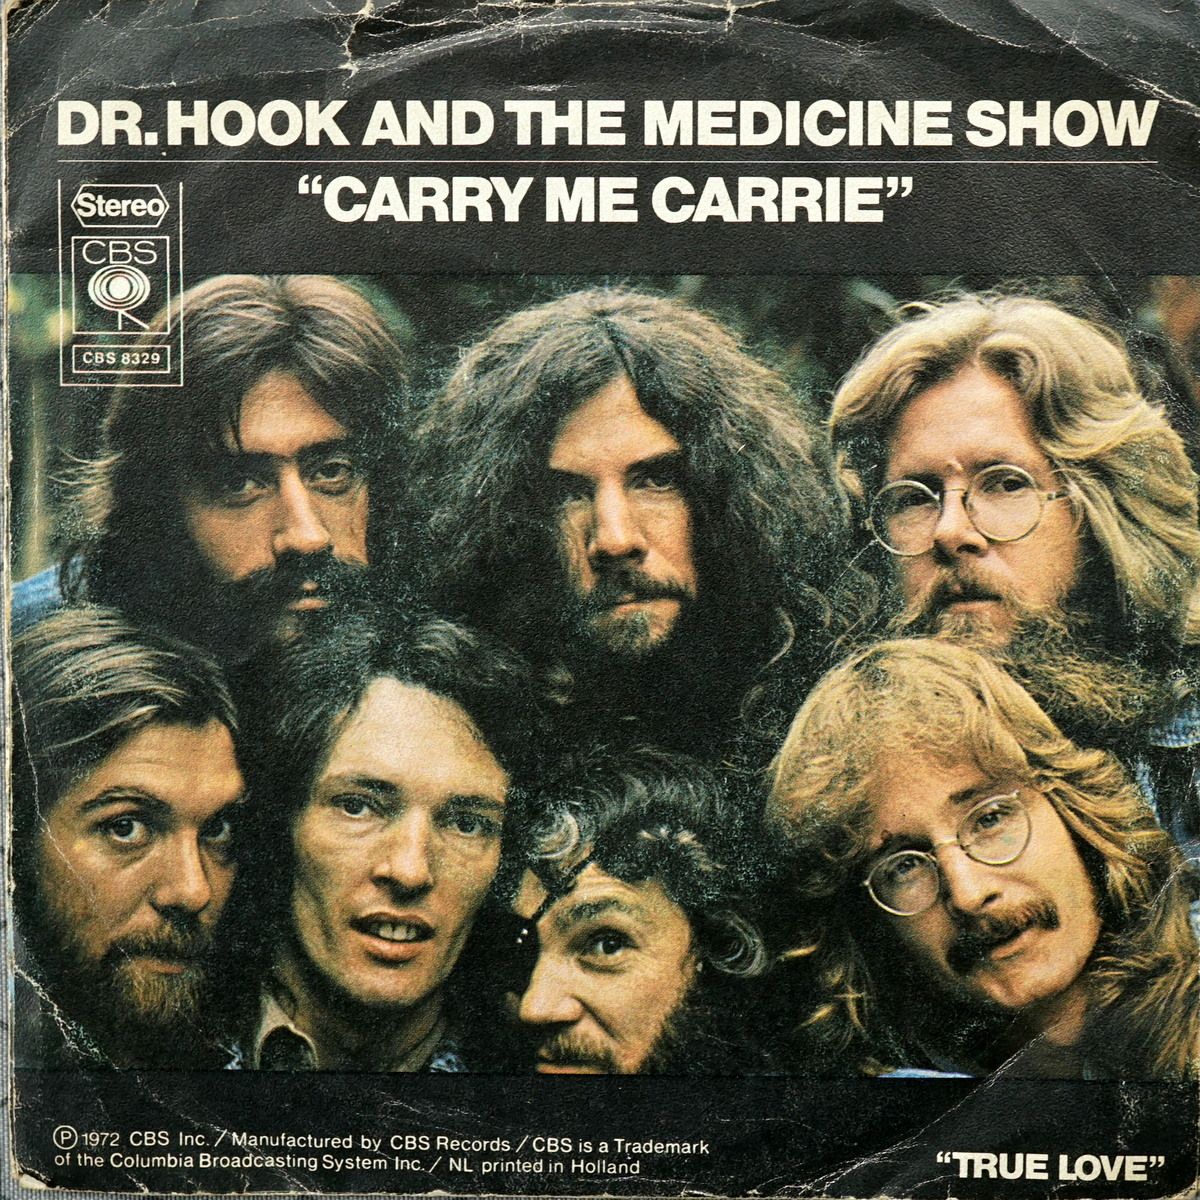 S SS A3 - CBS 8329 - Carry Me Carrie - 1972 - NL